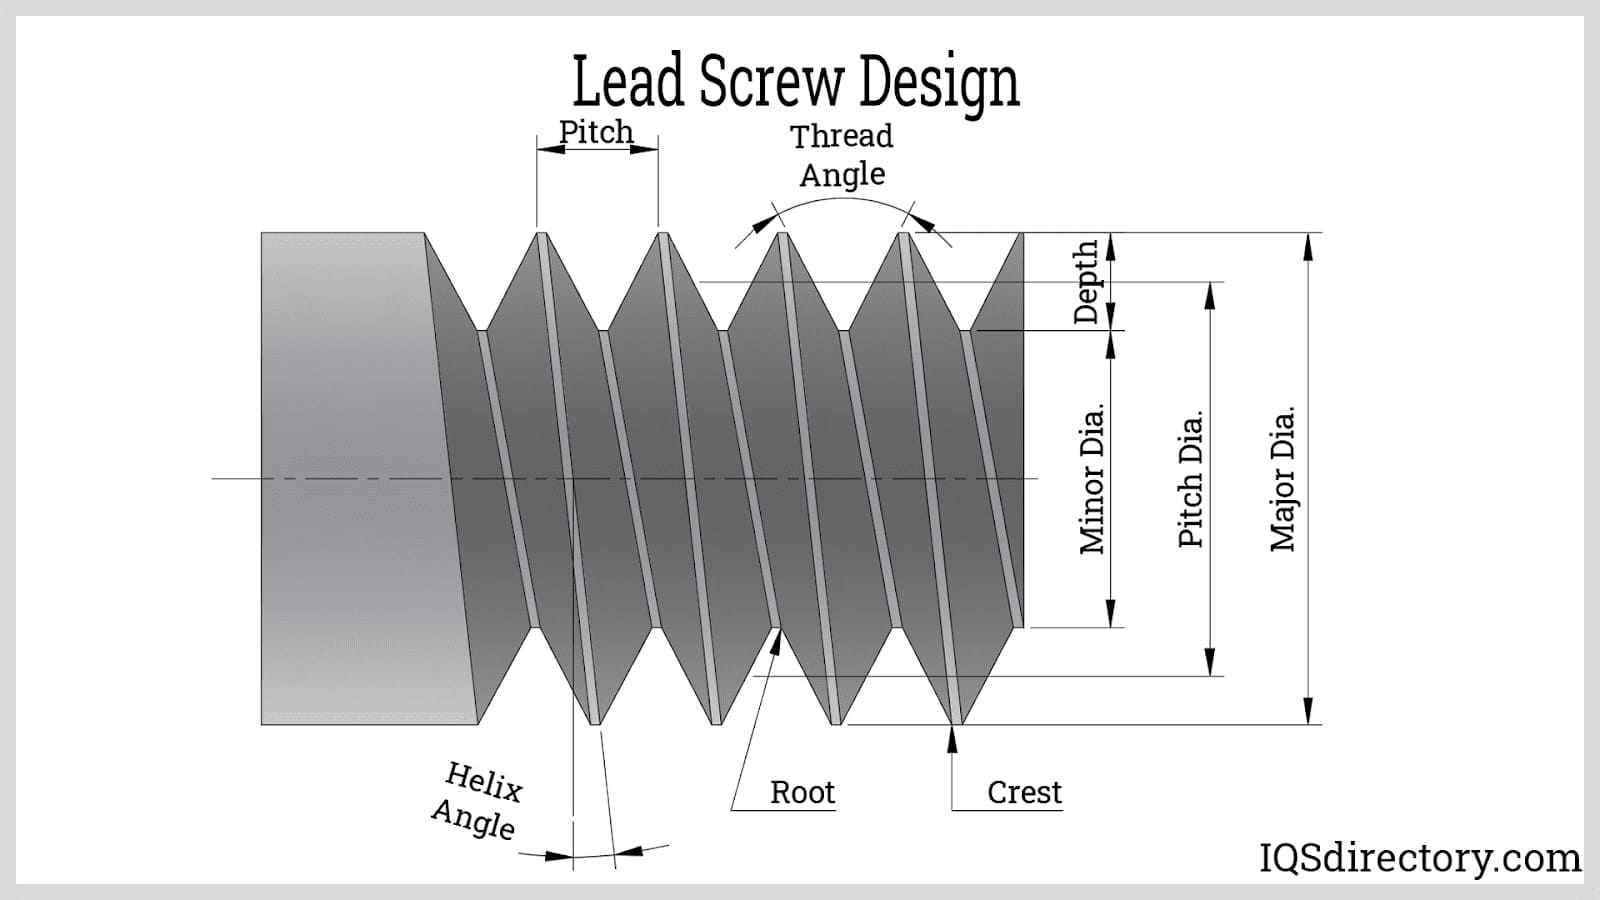 Lead Screw Design